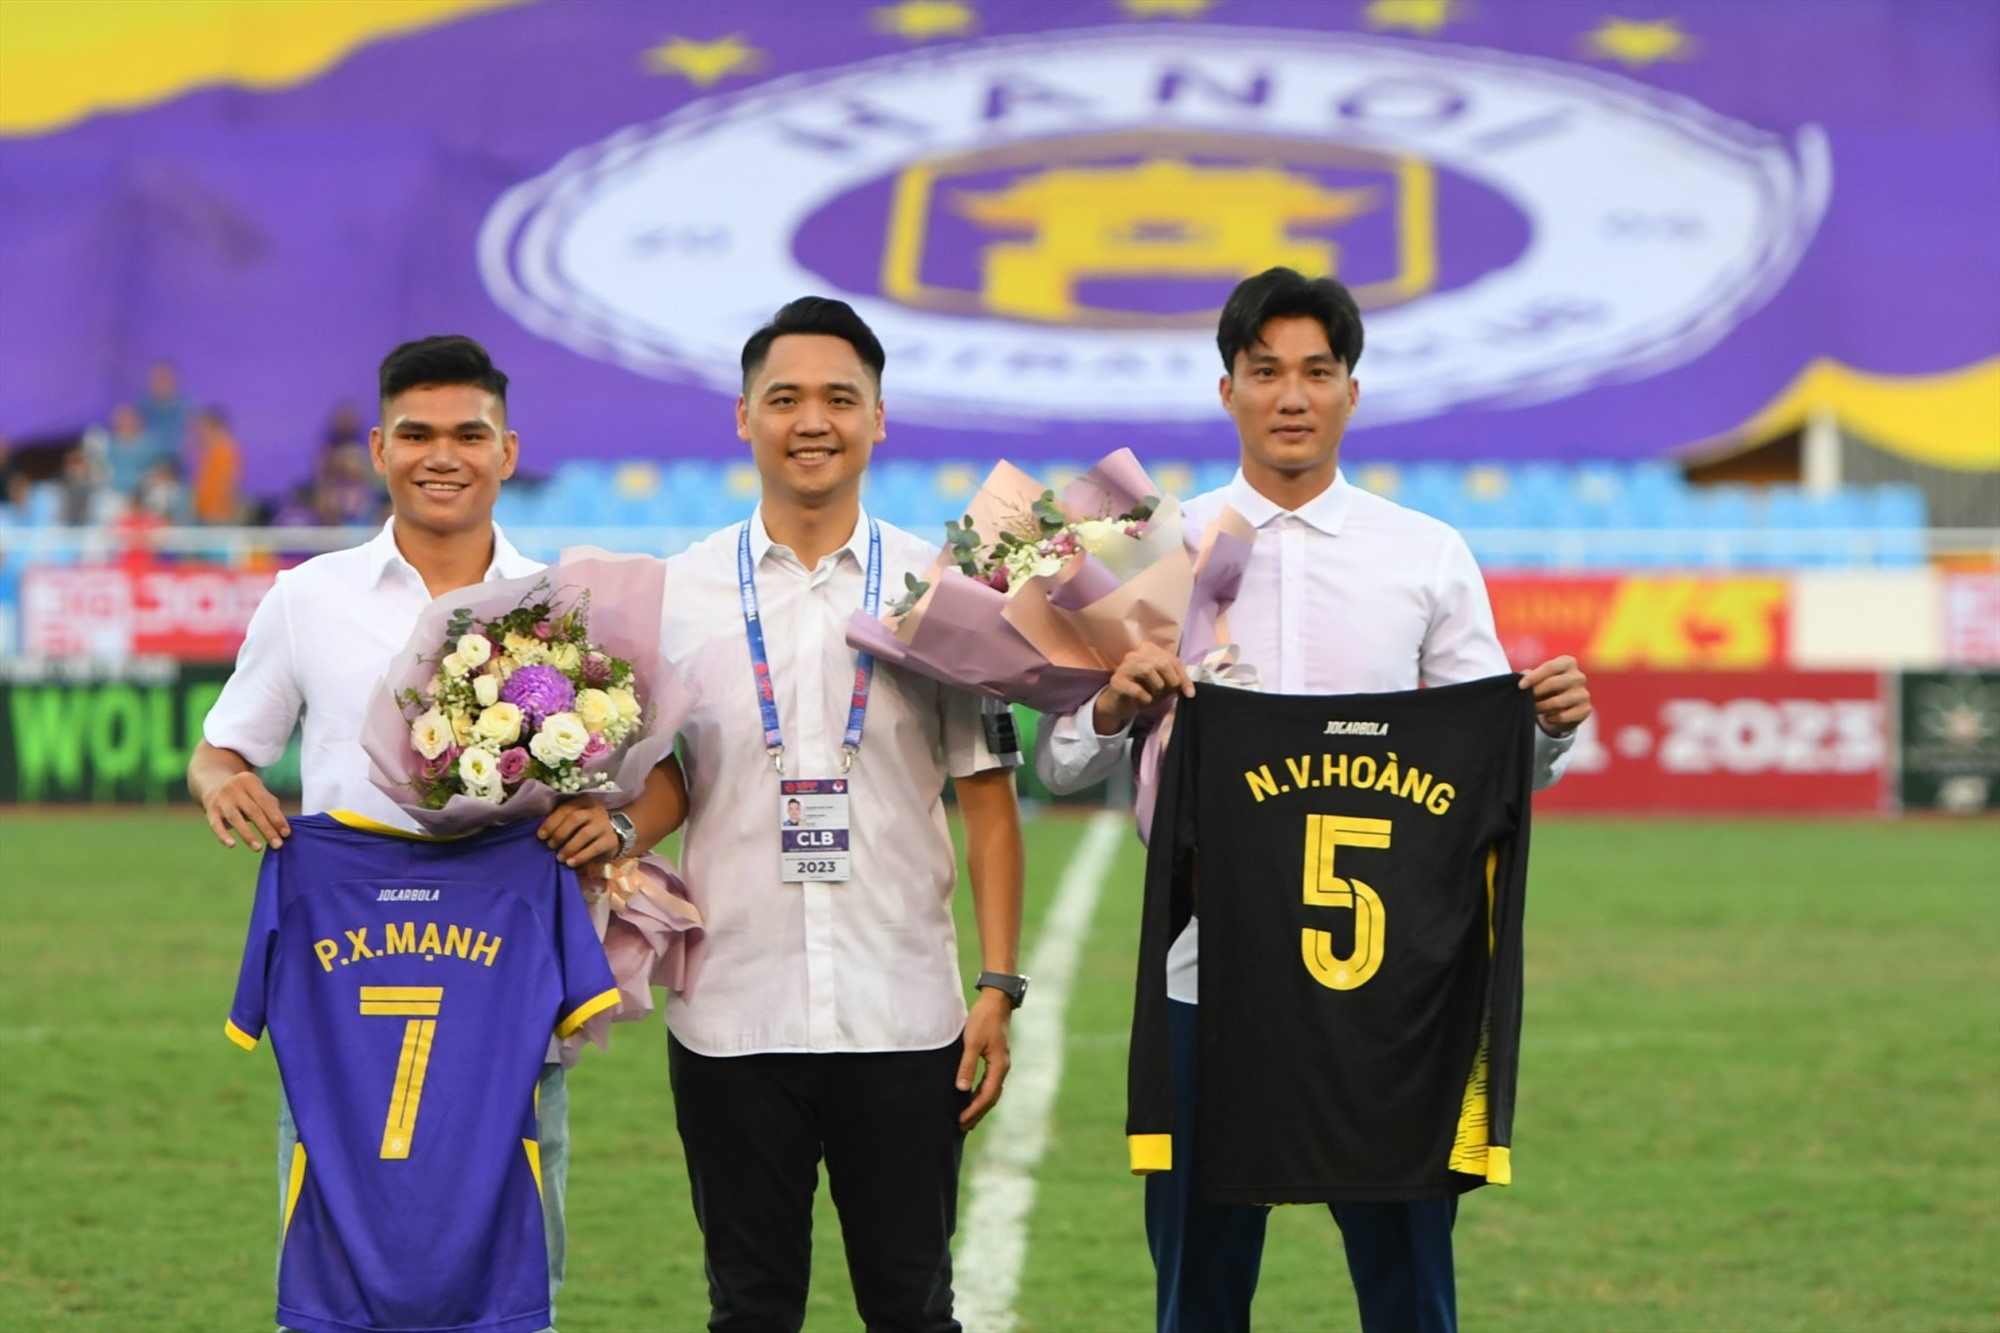 Xuân Mạnh và Văn Hoàng là tân binh của Hà Nội FC. Ảnh: Nguyễn Giang